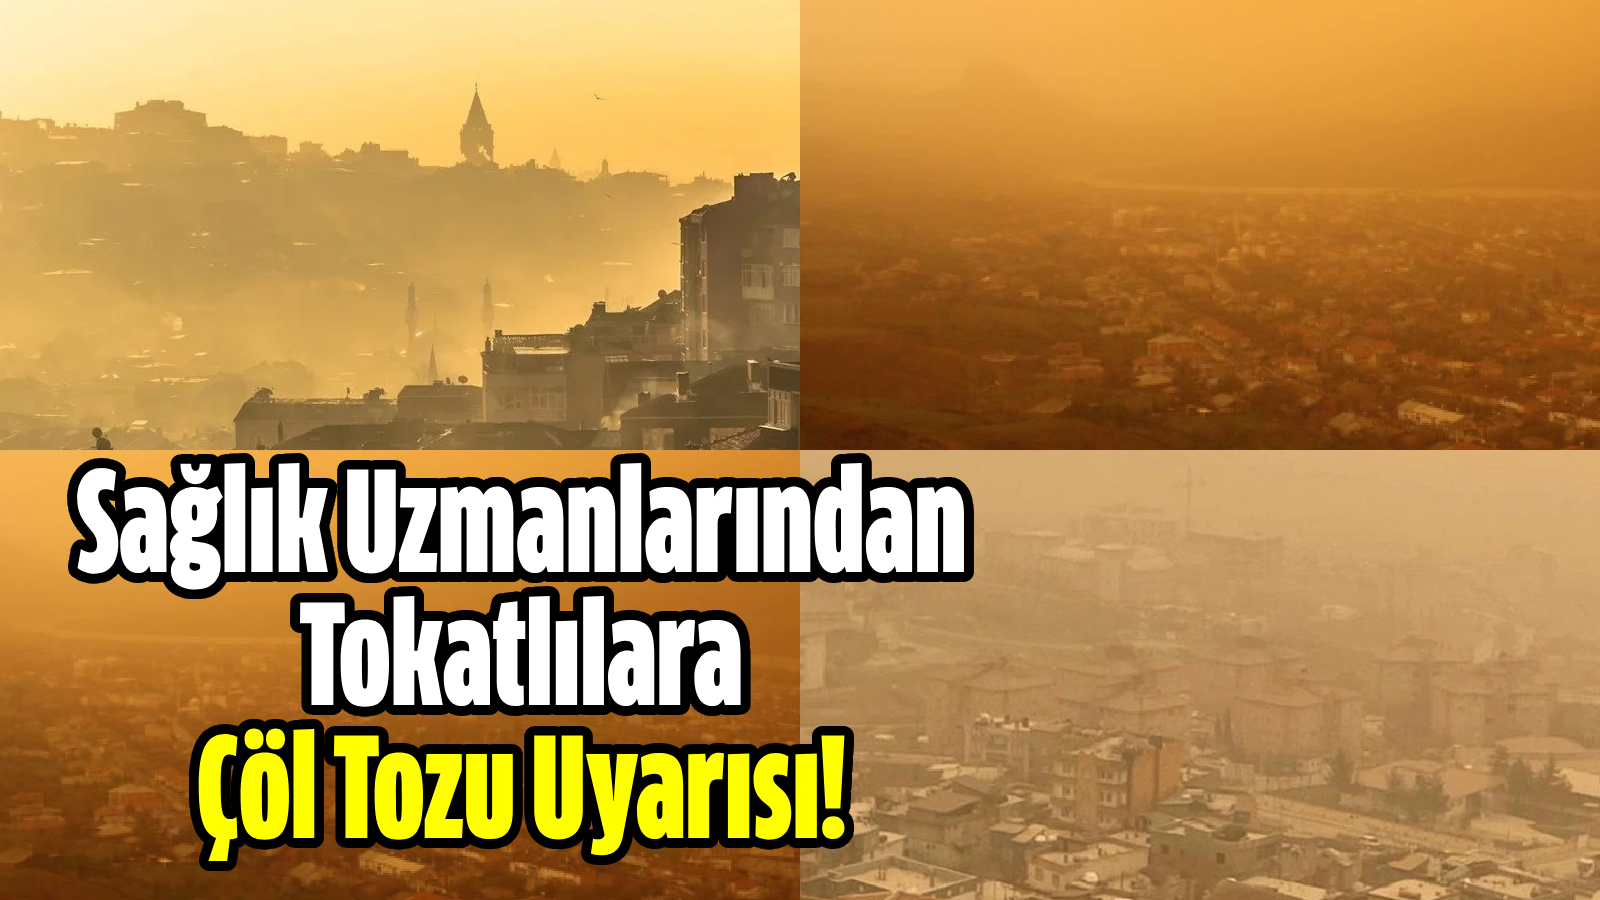 Προειδοποίηση για τη σκόνη της ερήμου από ειδικούς υγείας στους κατοίκους του Τοκάτ!  – Εφημερίδα Hürsöz